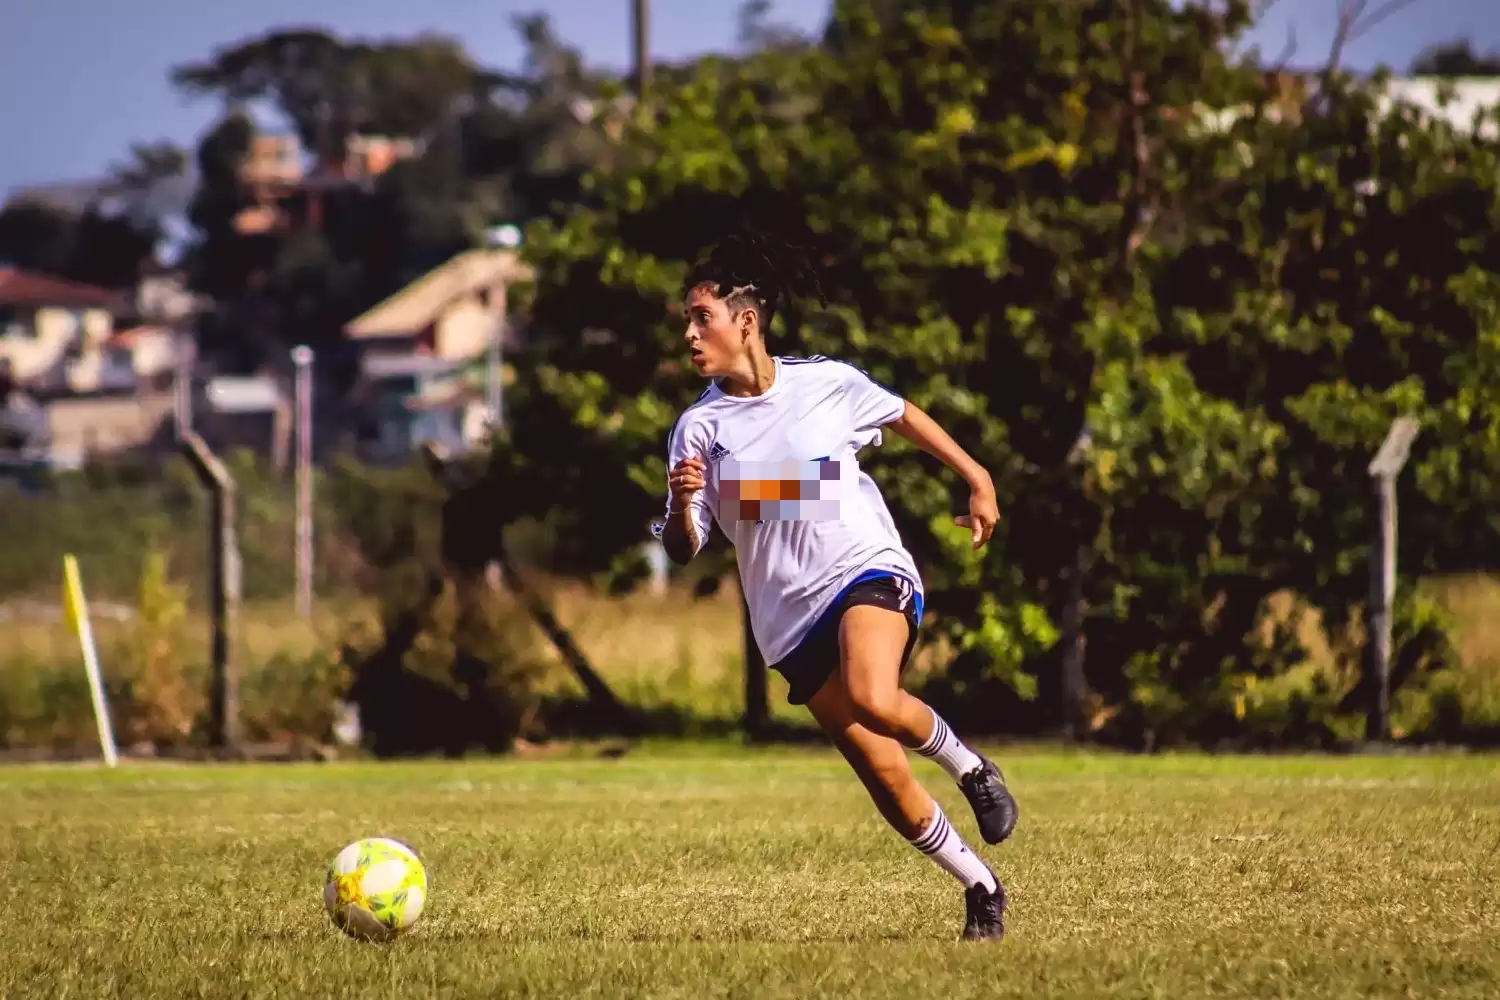 Atleta catarinense faz vaquinha para realizar sonho de jogar futebol nos EUA